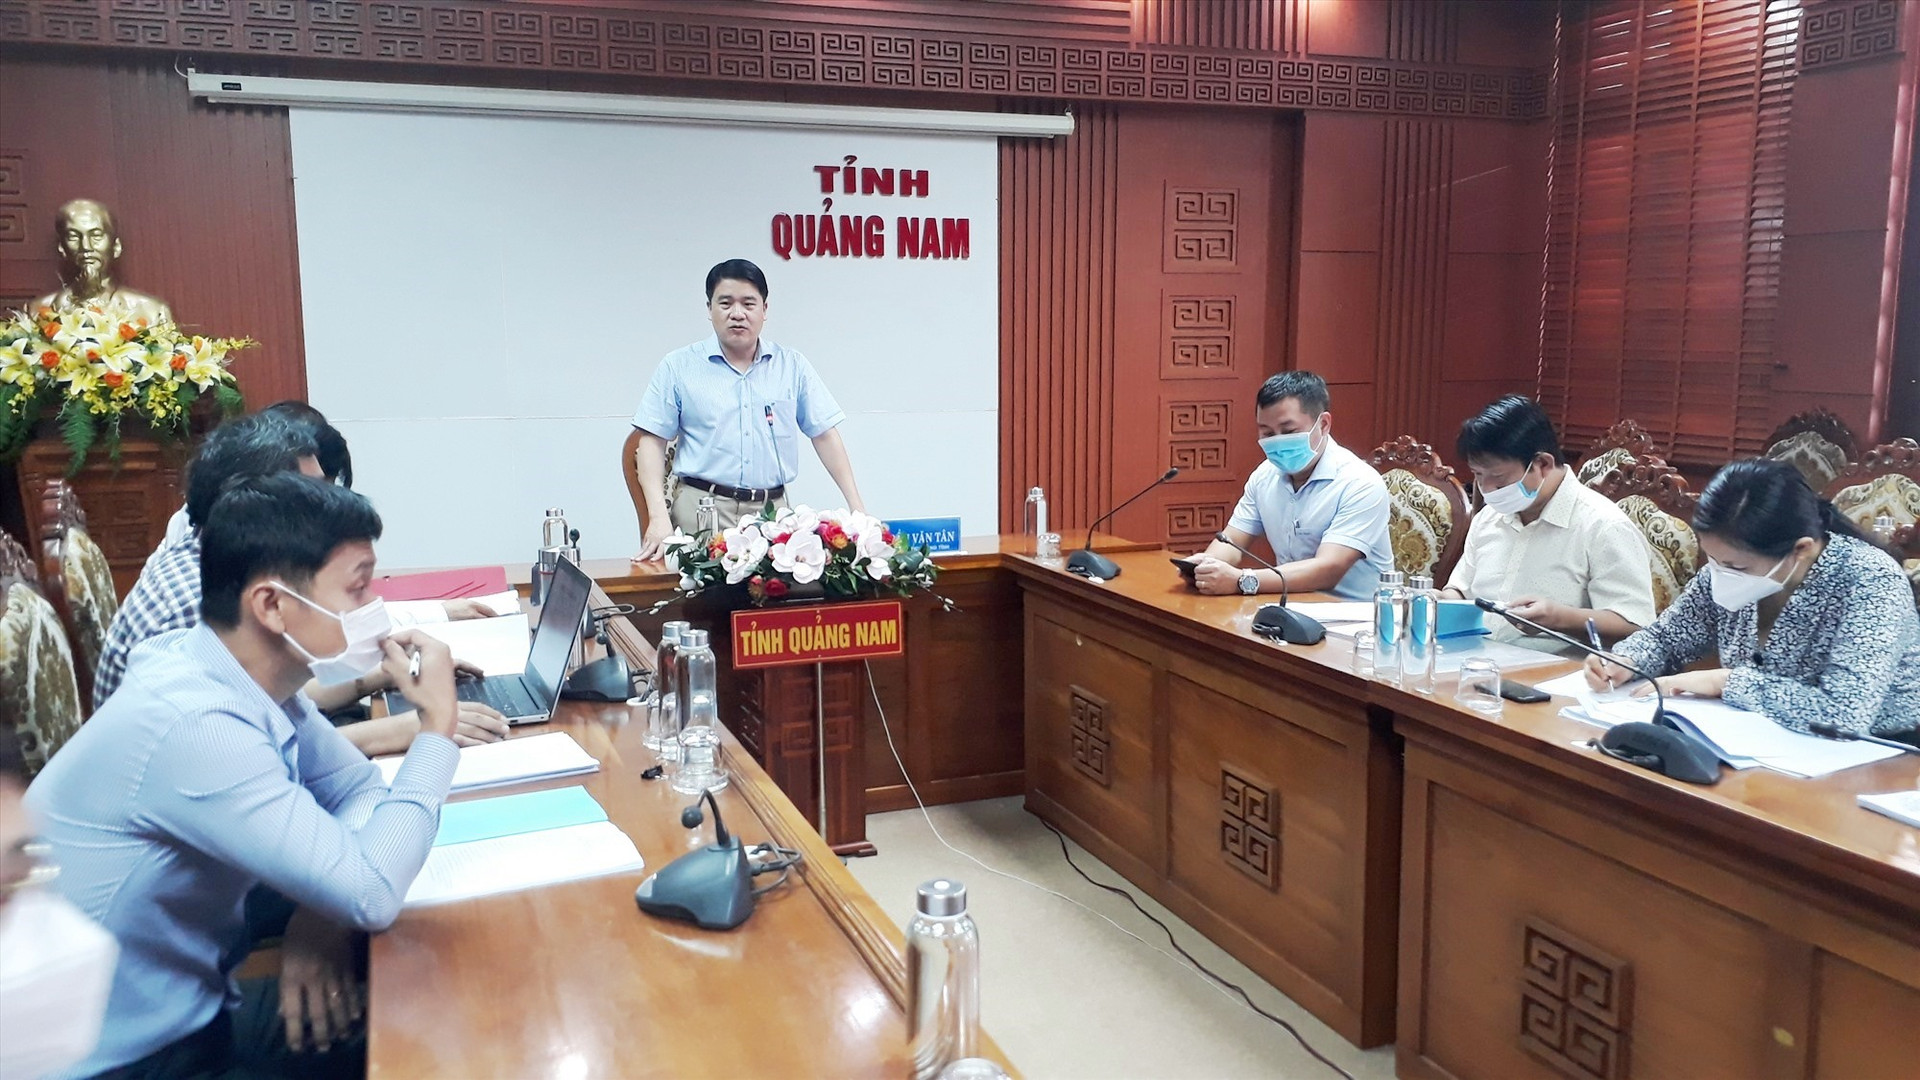 Phó Chủ tịch UBND tỉnh Trần Văn Tân đề nghị sớm hoàn thiện dự án Trường THPT Núi Thành báo cáo UBND tỉnh để trình HĐND tỉnh. Ảnh: X.P